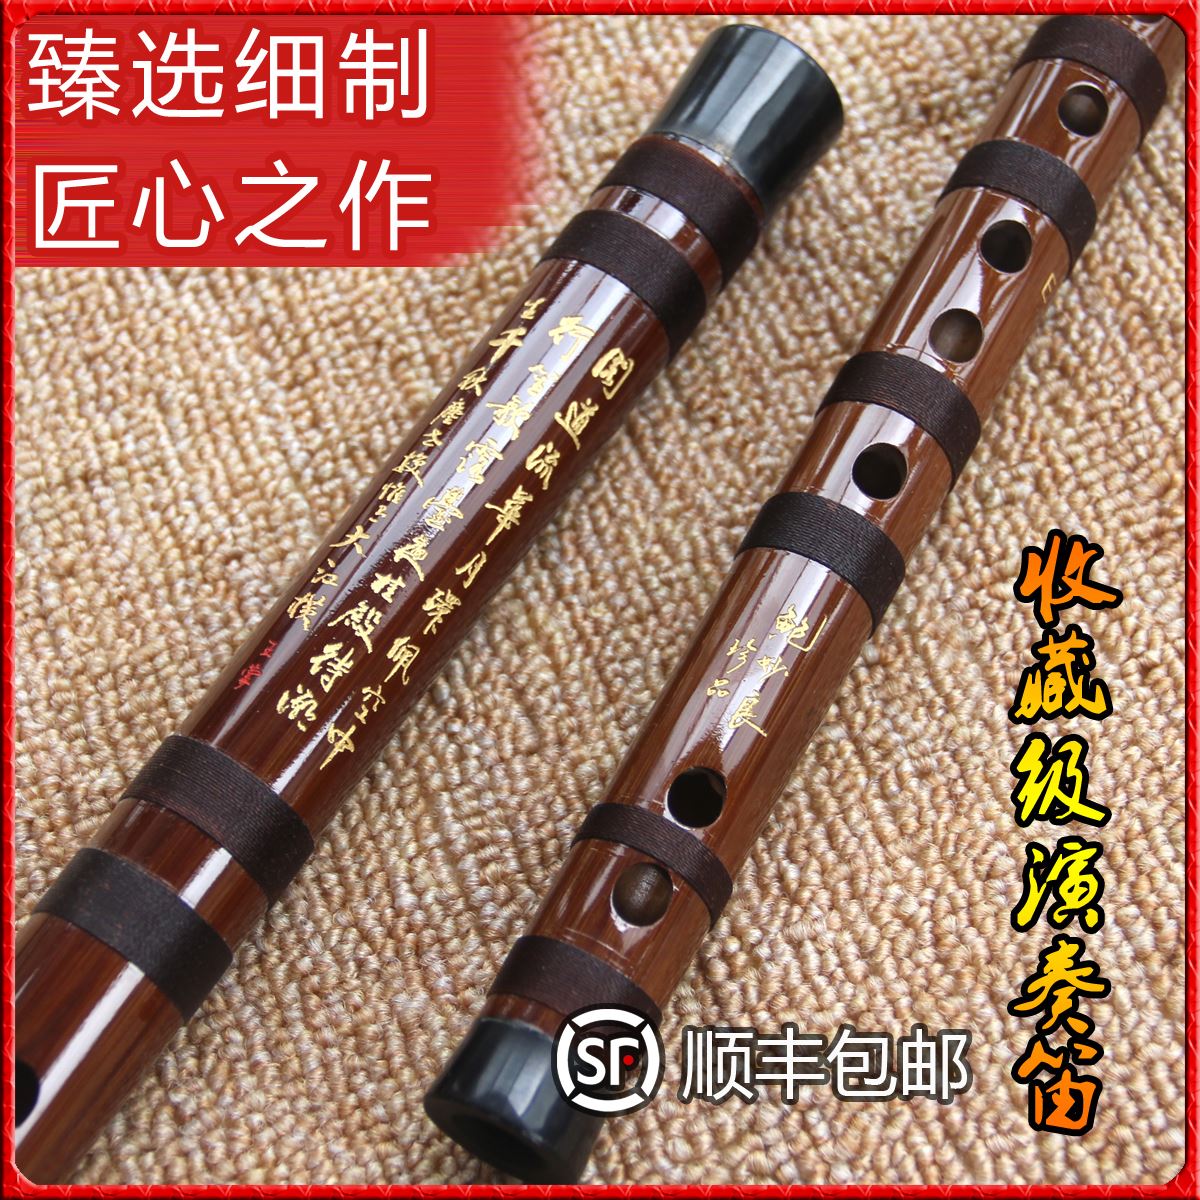 鲍妙良手工制作笛子竹笛专业成人演奏珍品特制笛子